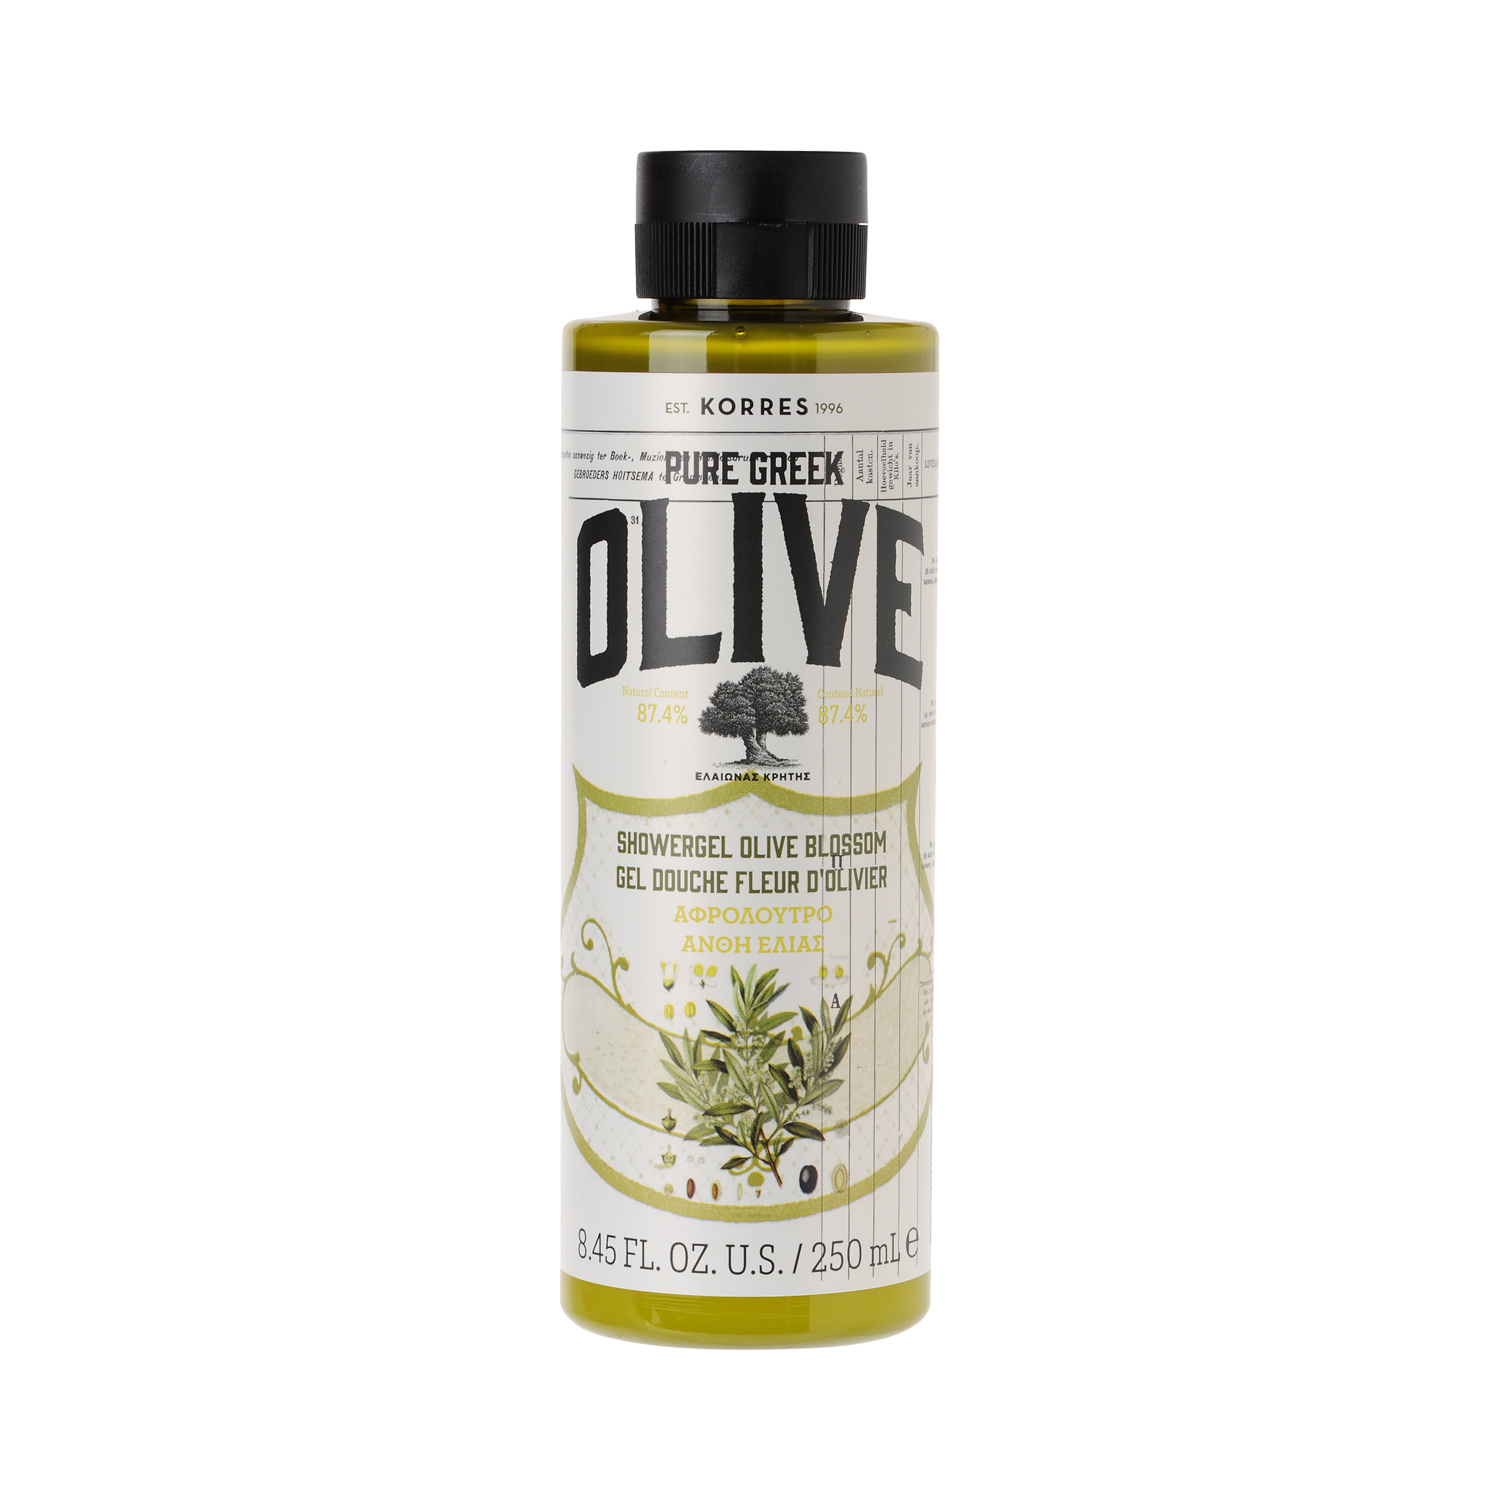 Korres - PURE GREEK OLIVE - Showergel Olive Blossom - Duschgel mit Olivenblüte